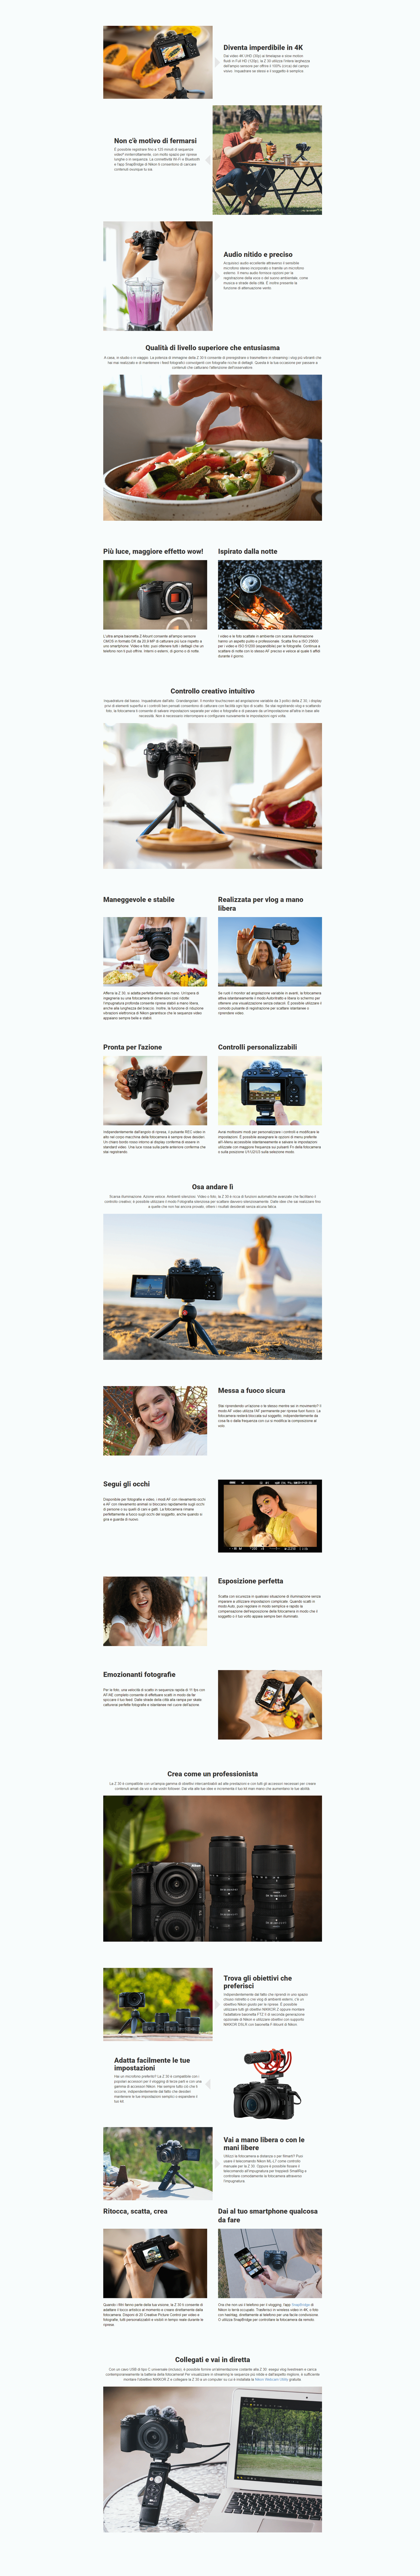 Template Nikon Z30 + 16-50mm f/3.5-6.3 VR + 50-250mm f/4.5-6.3 DX VR + Lexar SD 64GB 800x